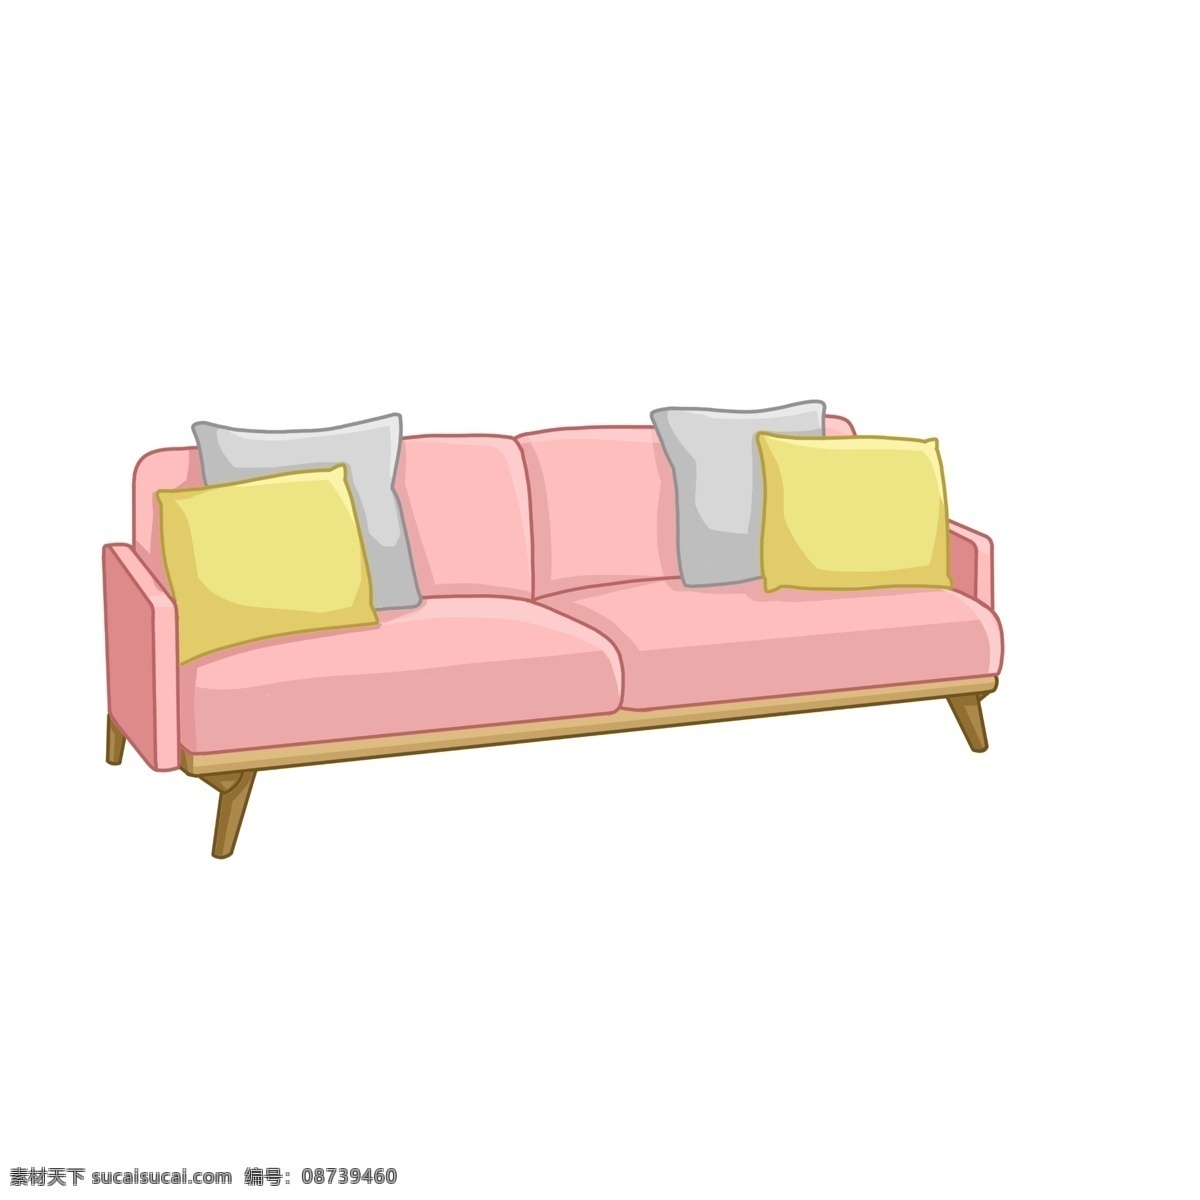 清新 现代 家居 家装 双人 沙发 装饰 两人坐沙发 双人座沙发 双人沙发 家具摆设 布艺沙发 现代沙发 软卧沙发